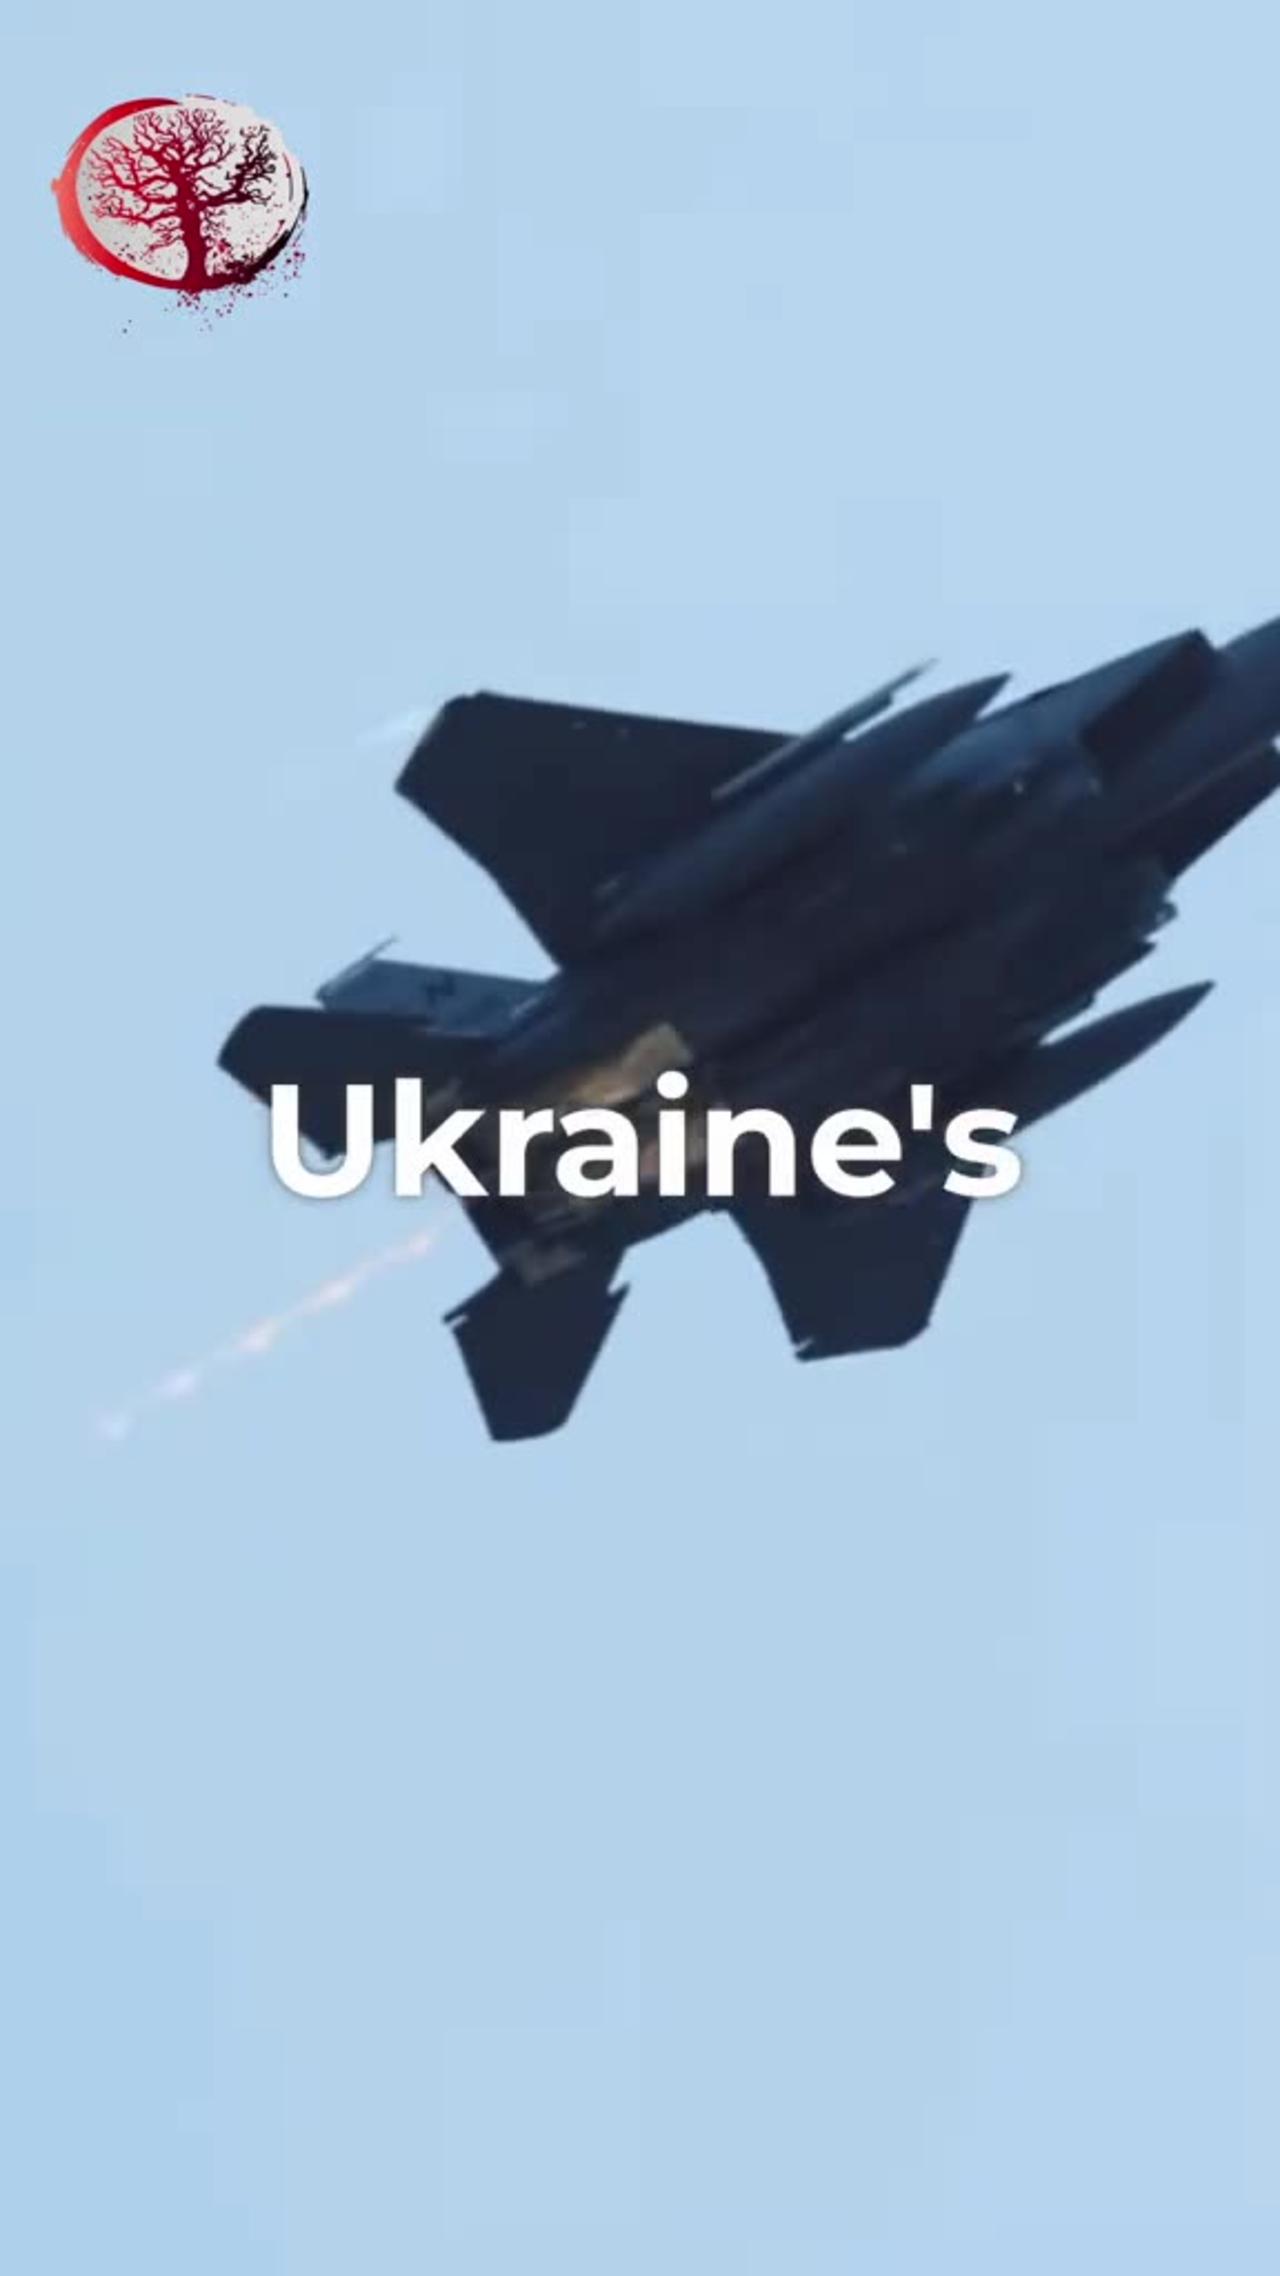 Attack on Ukraine